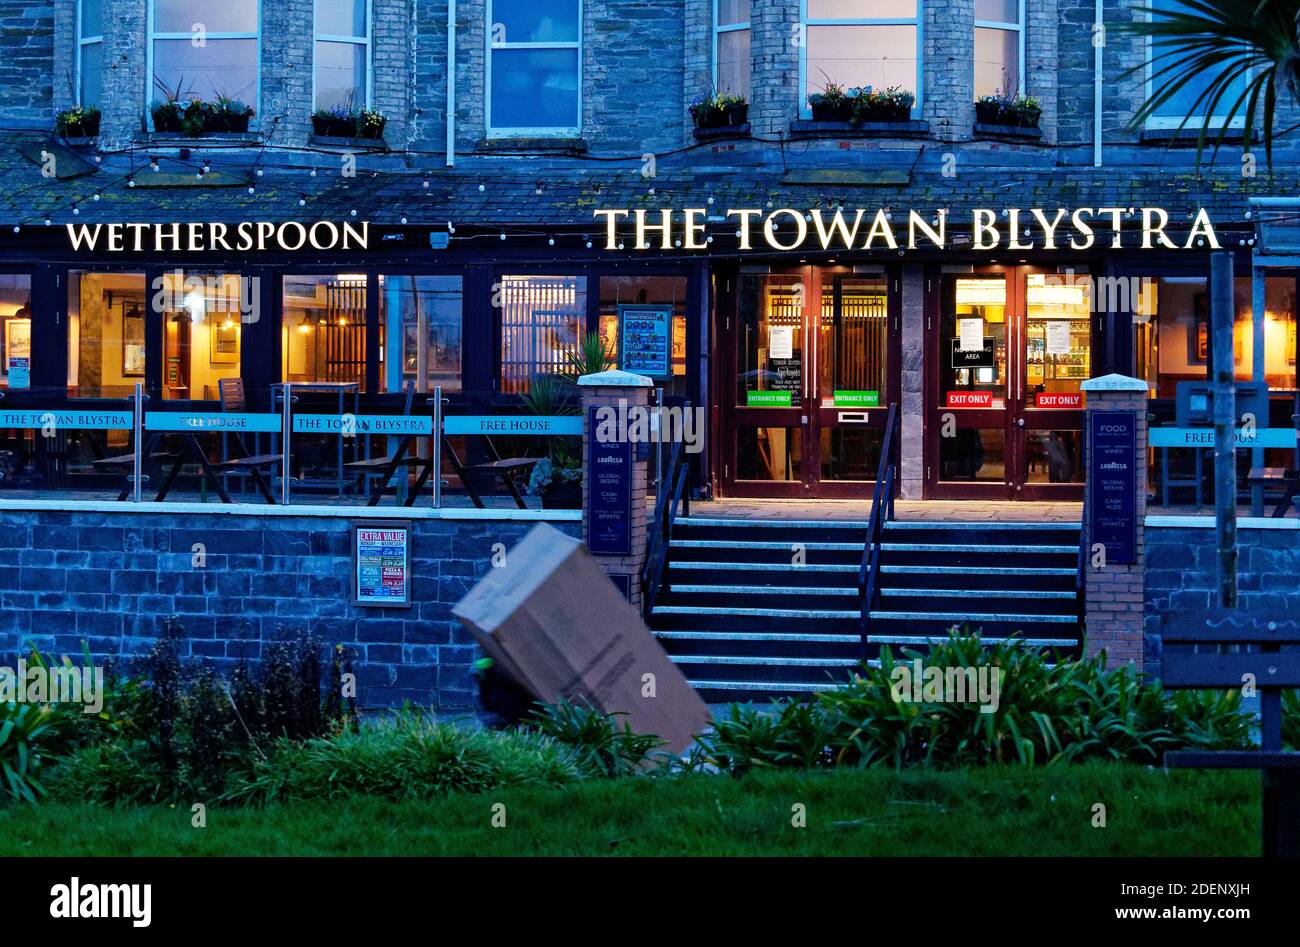 Cornwall kommt aus Lockdown. Newquay`s Restaurants, Pubs, Hotels und nicht unverzichtbare Geschäfte werden zum Leben erweckt, nachdem die Einzelhandelsgeschäfte in Großbritannien fast einzigartig das am wenigsten restriktive Covid-Regime genießen. Cornwall, Großbritannien, 1. Dezember 2020. Kredit:Robert Taylor/Alamy Live Nachrichten Stockfoto